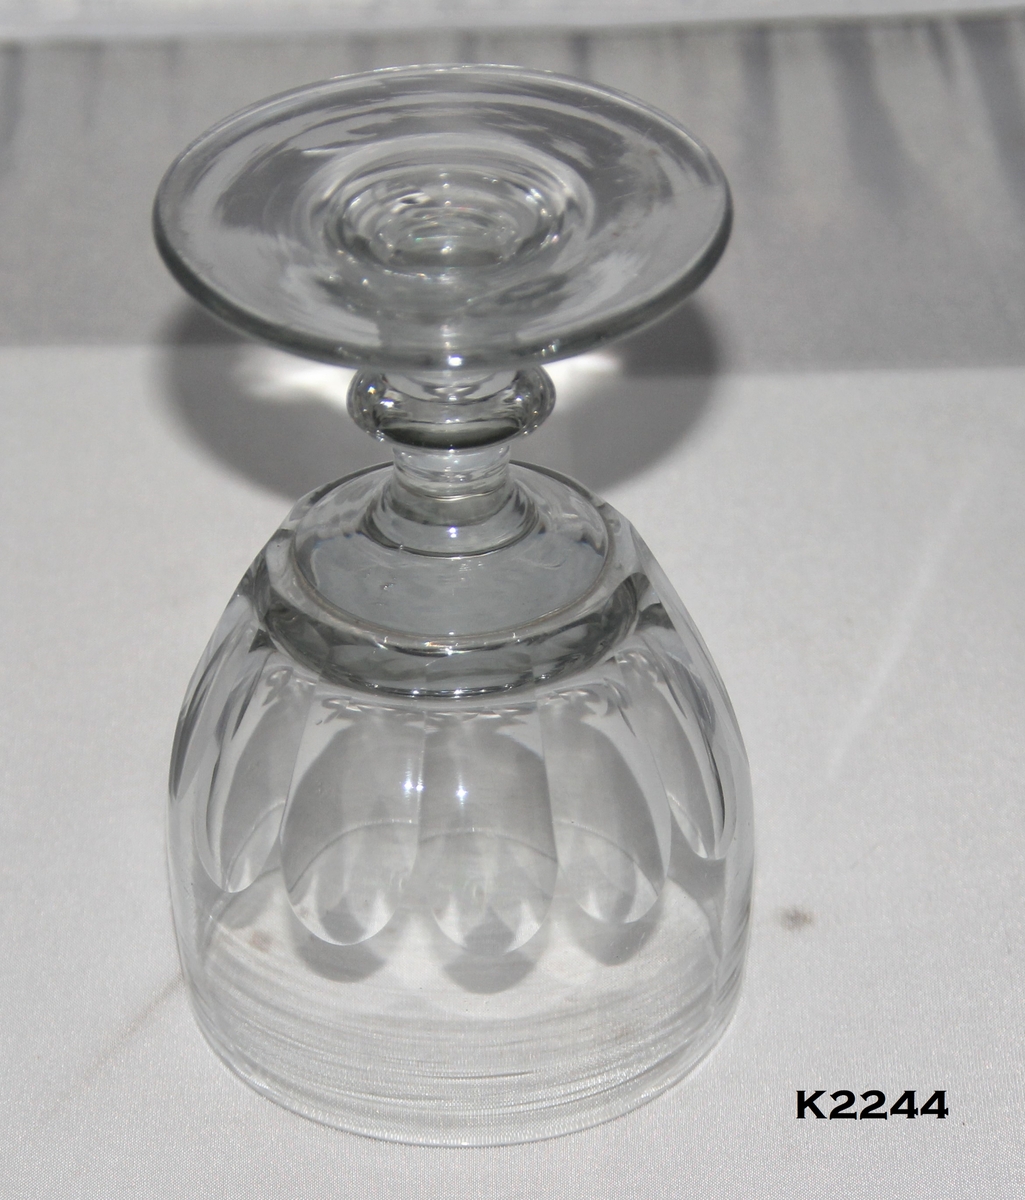 Mjneralvannglass, 2 stk.
Glass, klart. Smalt glass med oppoverskrånende sider.
Tykk bunn, med ti fasettslipninger over nedre del, svakt innsvunget nederst.